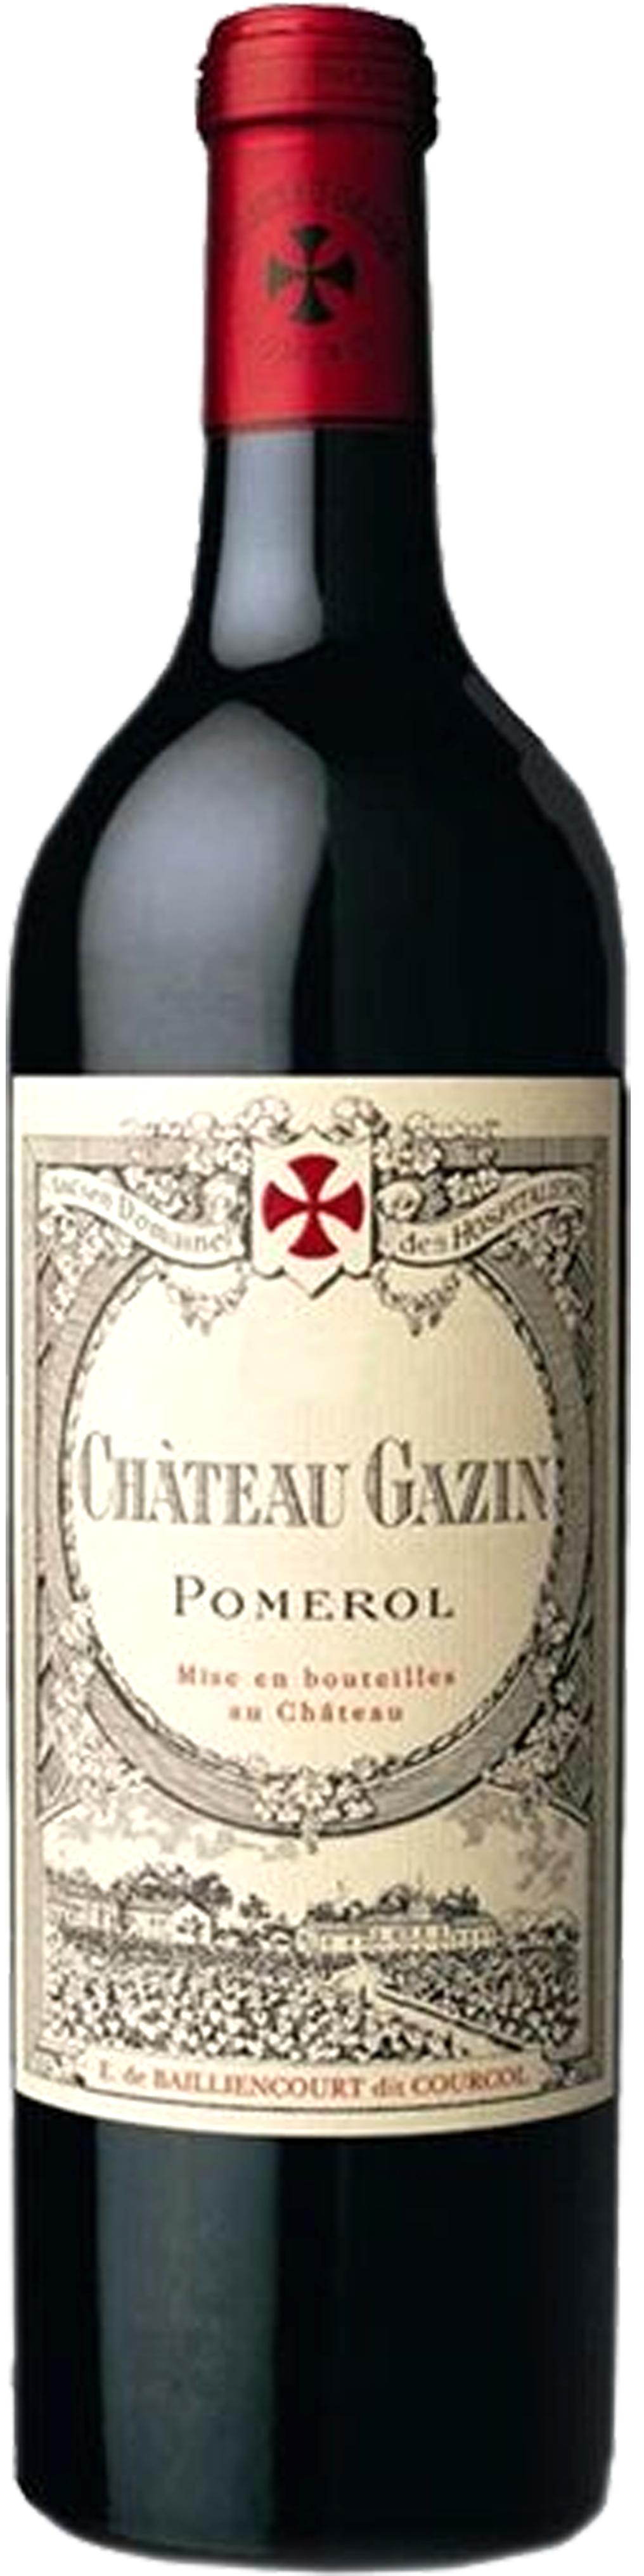 Bottle shot of 2010 Château Gazin, Pomerol